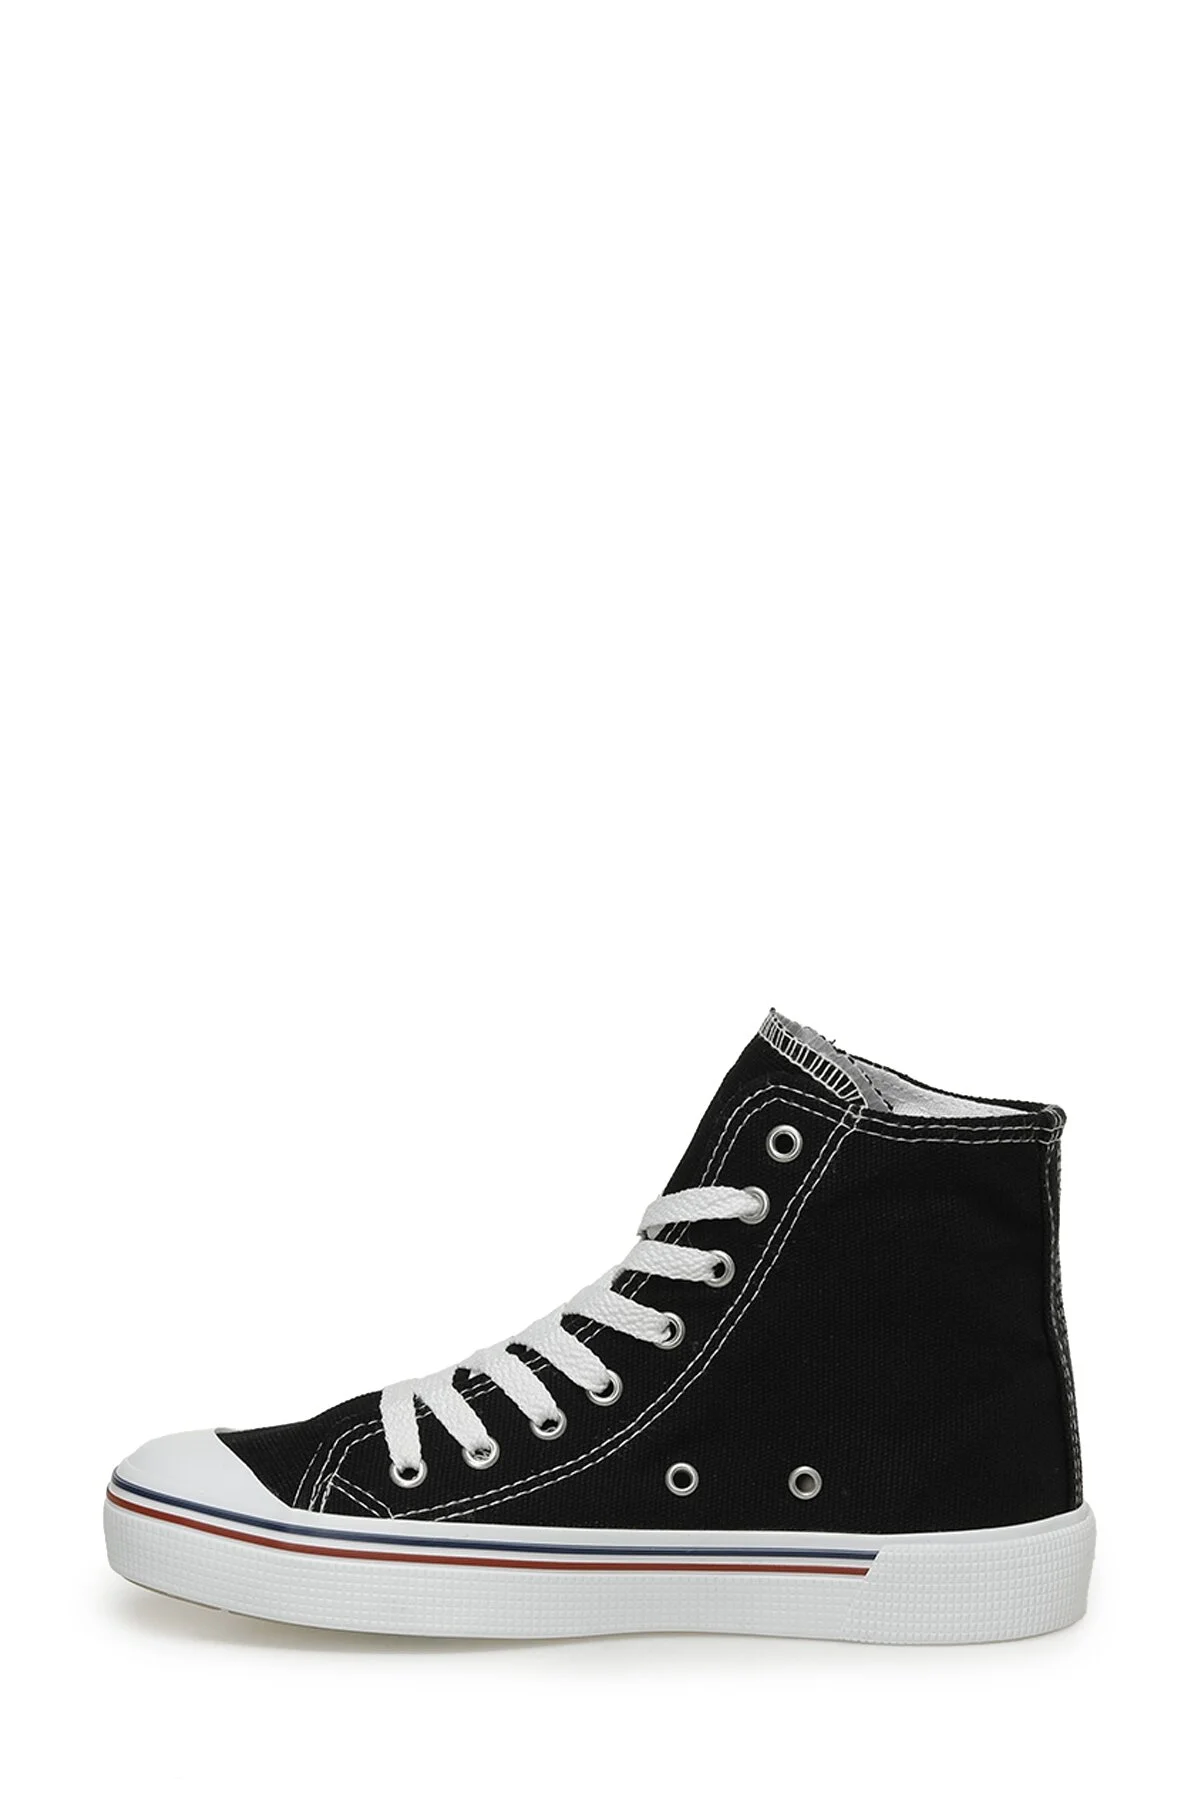 PENELOPE HIGH 3FX Kadın Sneaker-Siyah